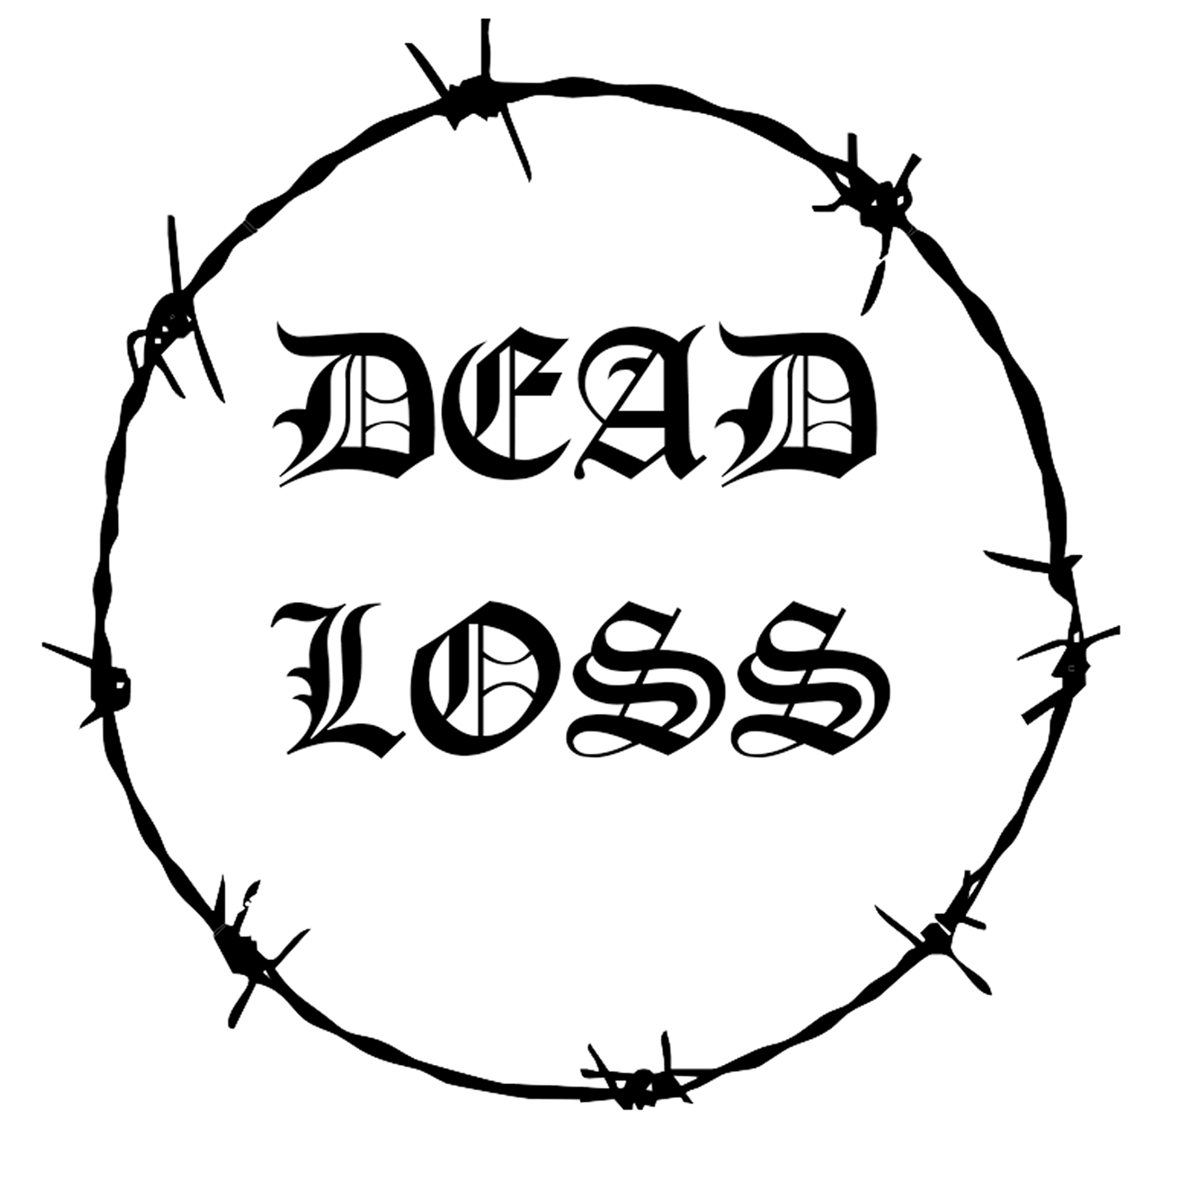 Dead loss